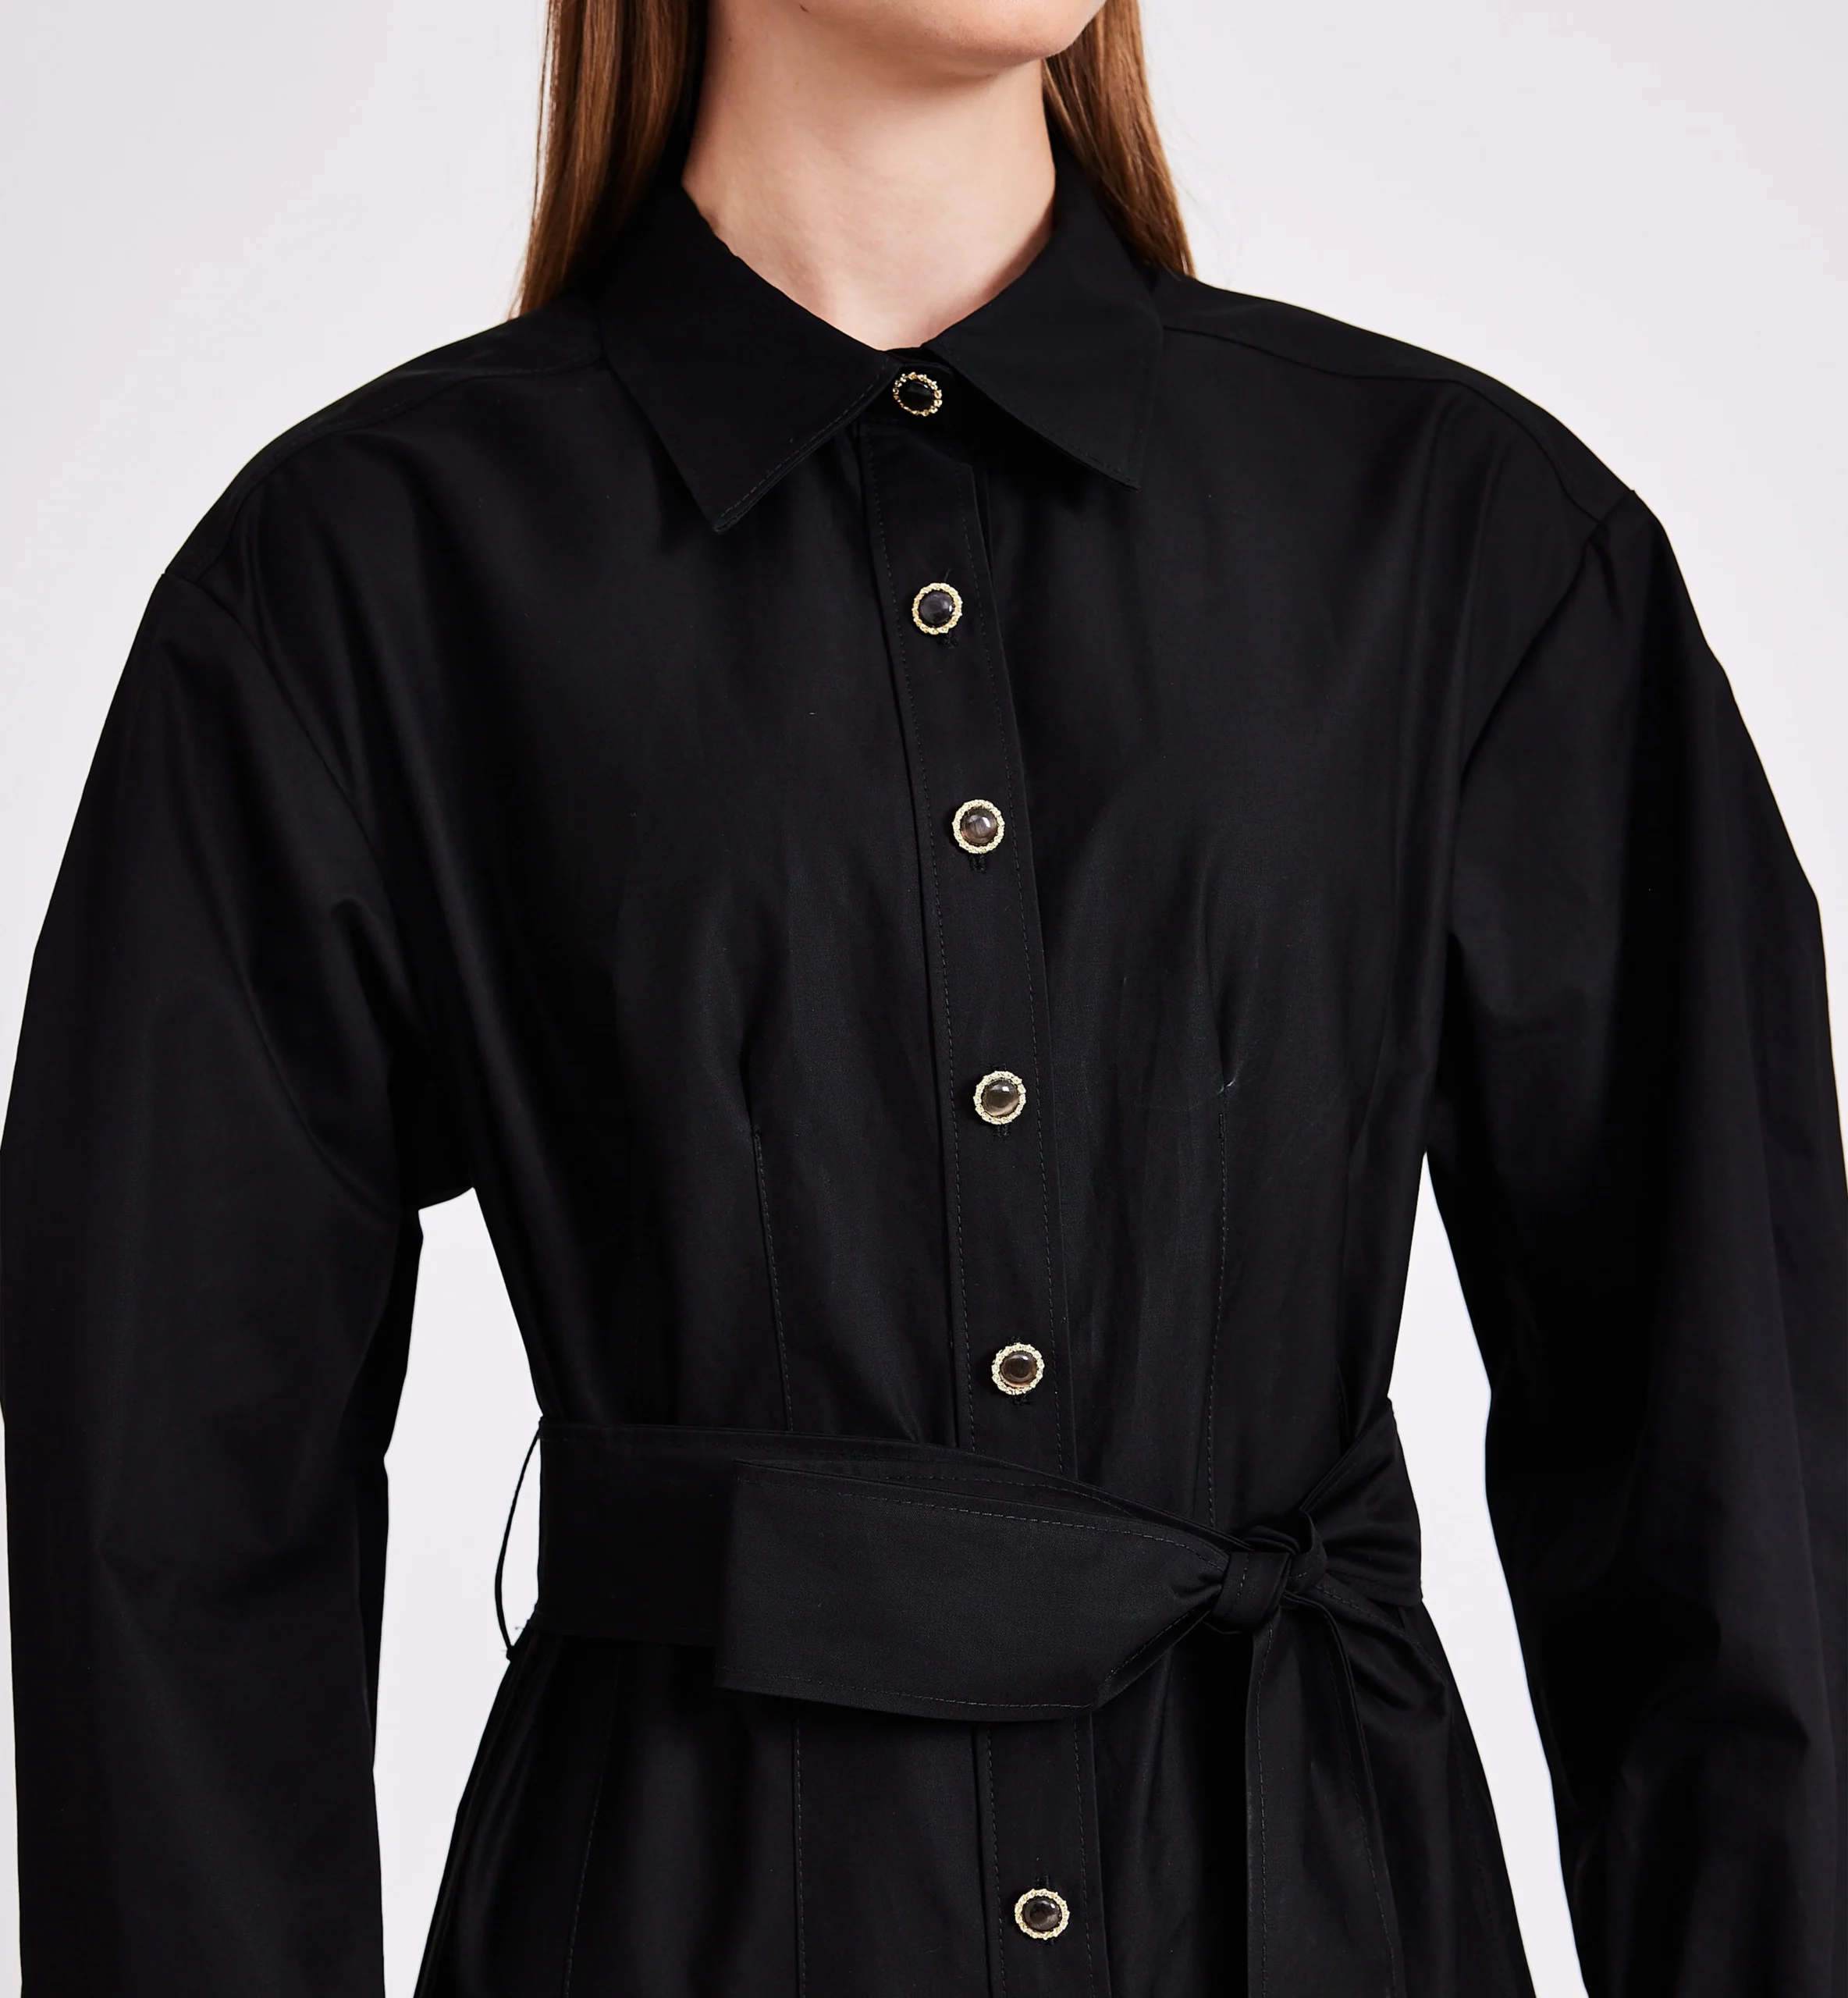 Cotton collared midi dress, black